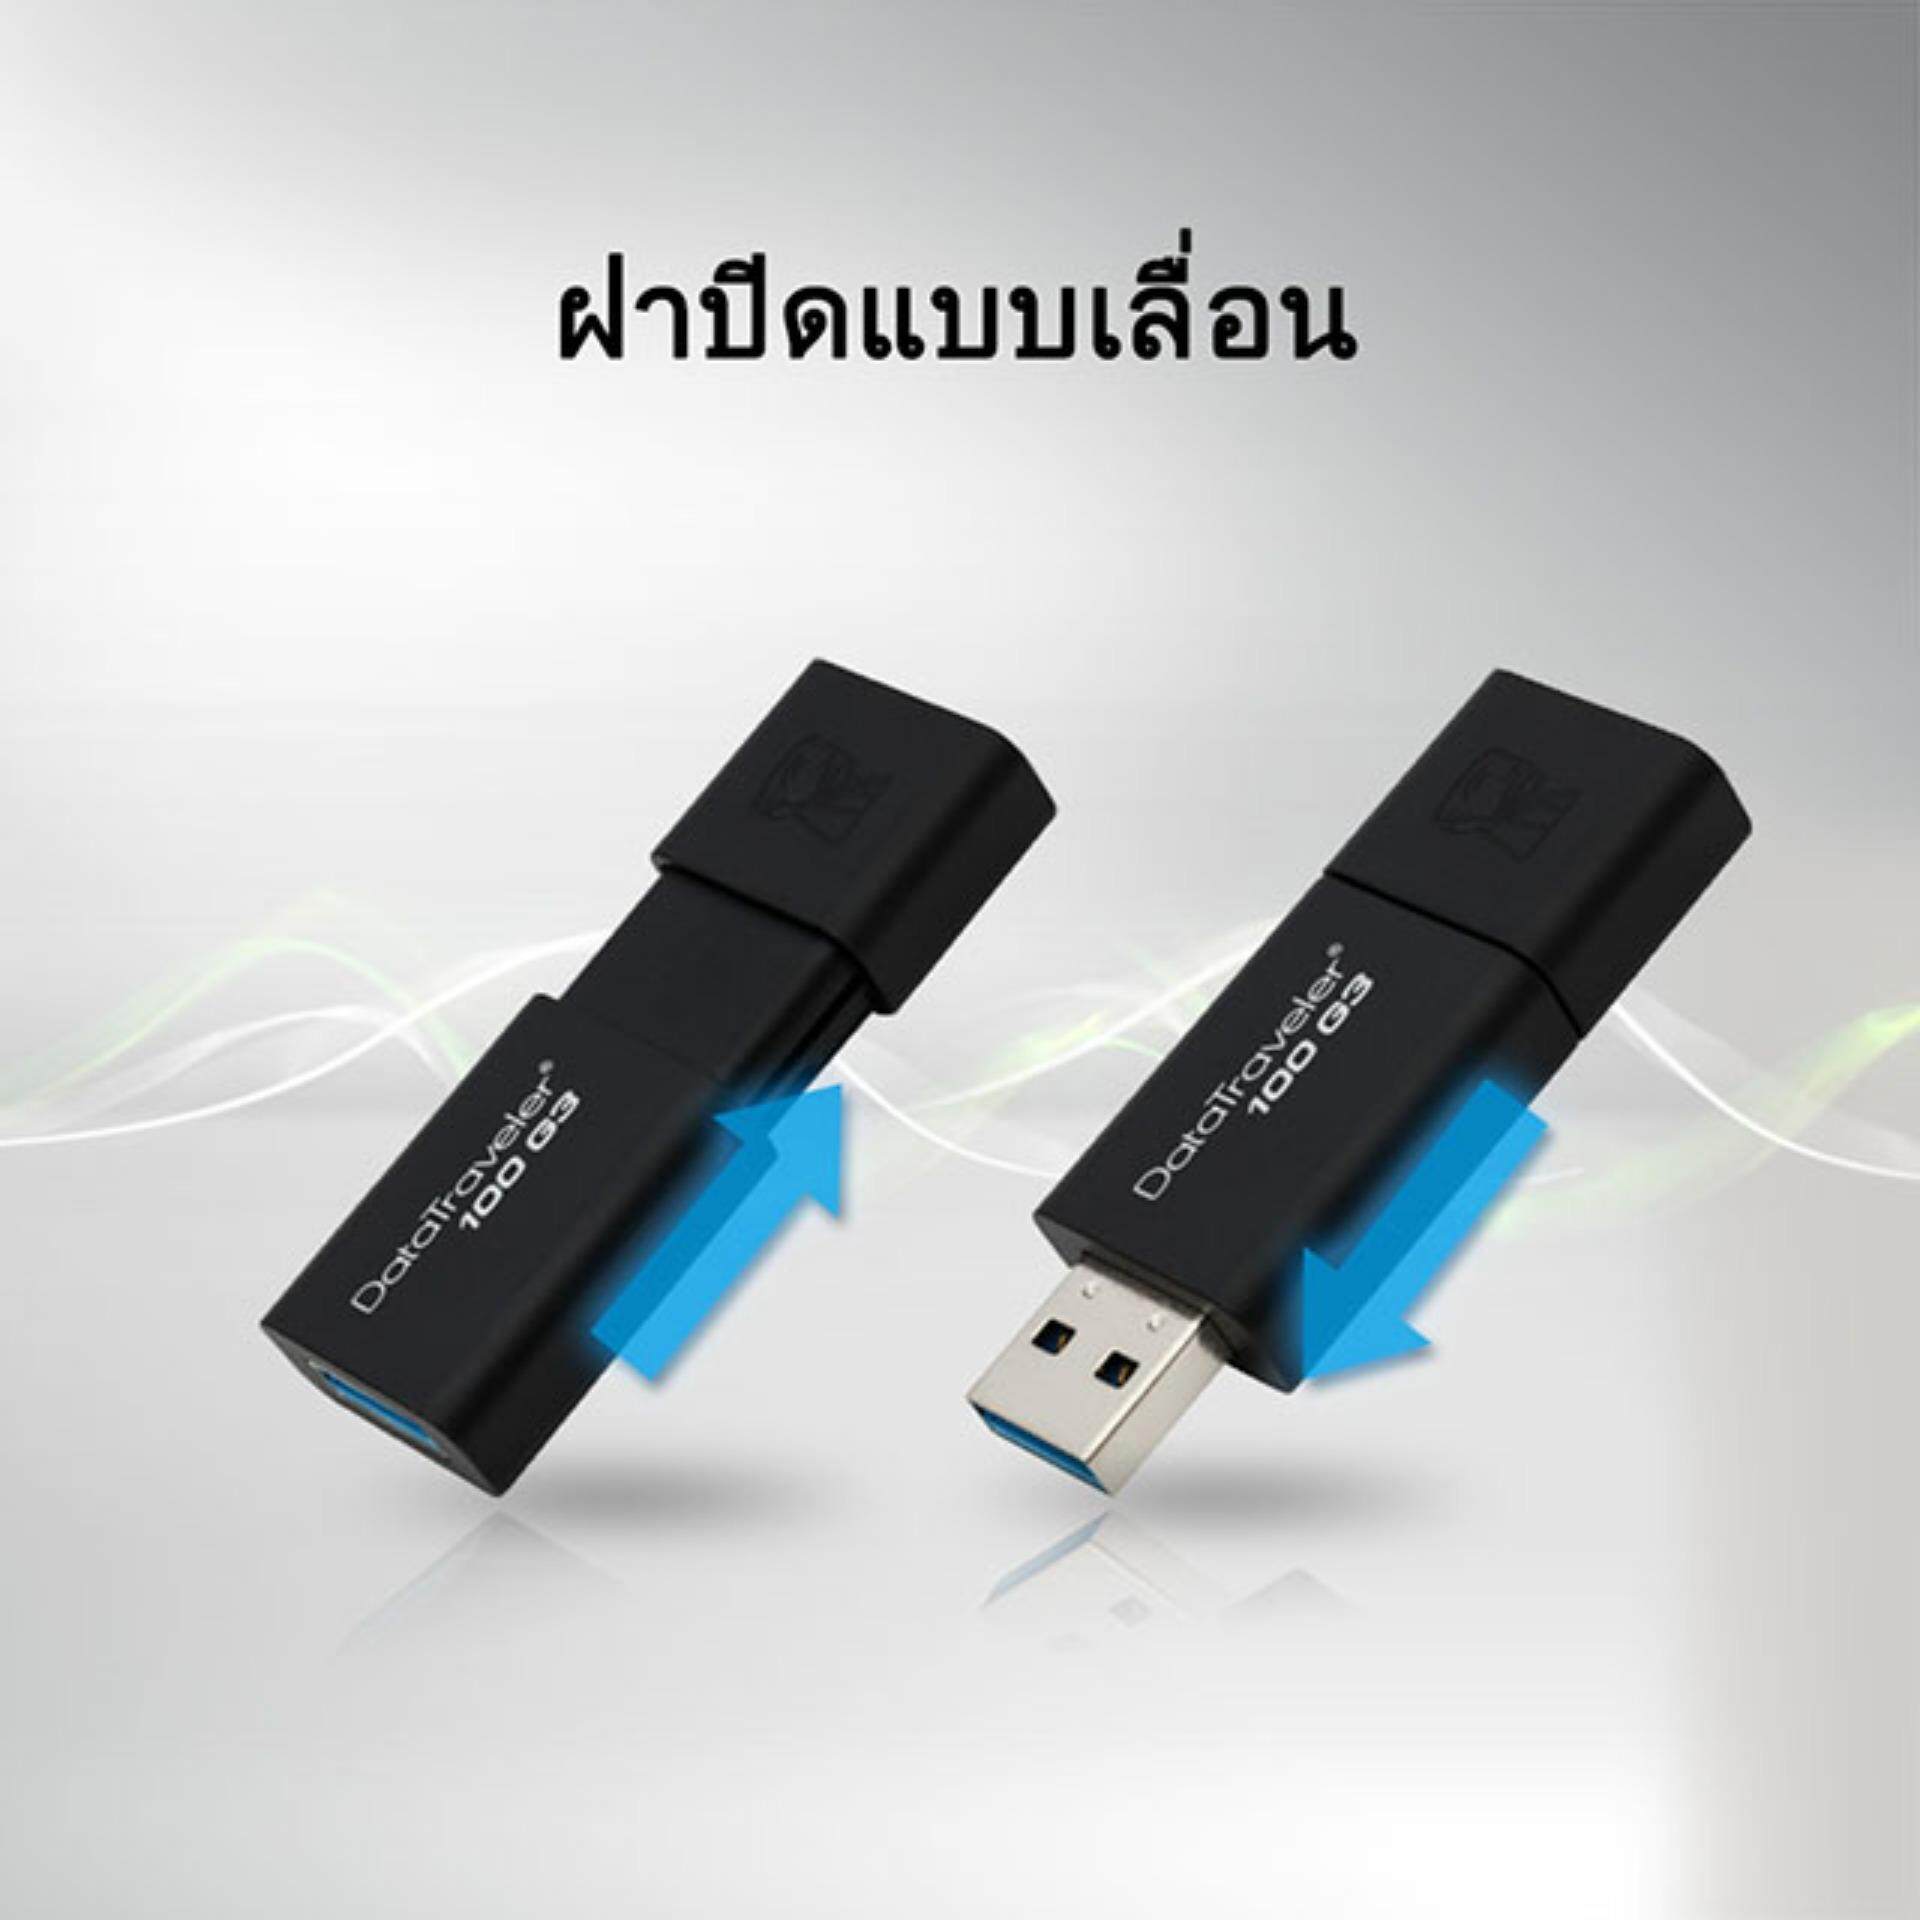 ข้อมูลเพิ่มเติมของ แฟลชไดร์ฟ Kingston USB 3.1 DataTraveler 100 G3 32GB 16GB 64GB